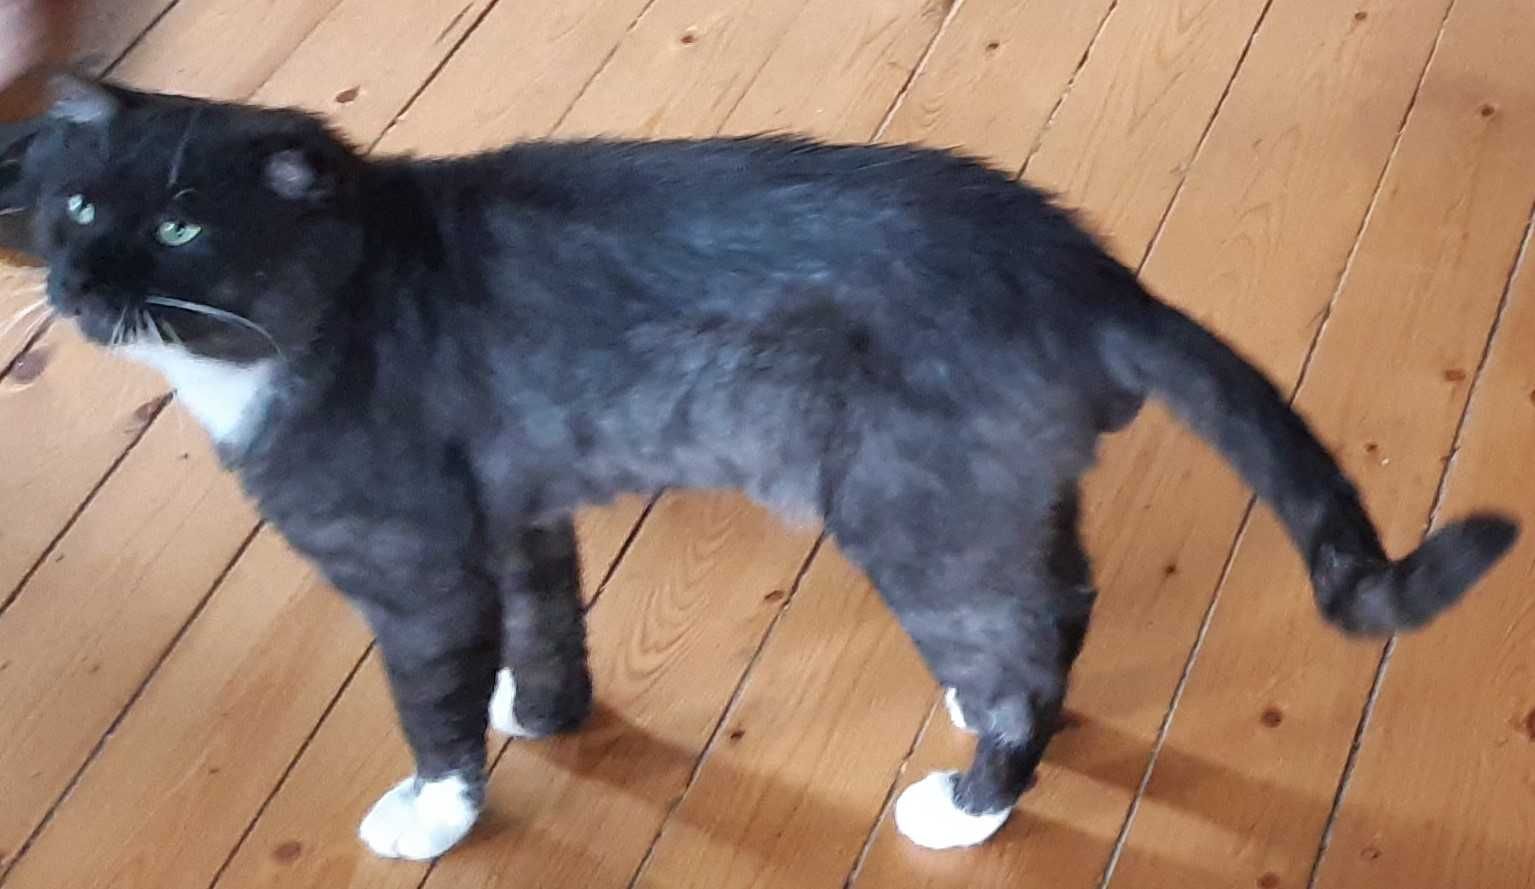 Zginąl kot czarny z białym podbródkiem Warszawa Grochów